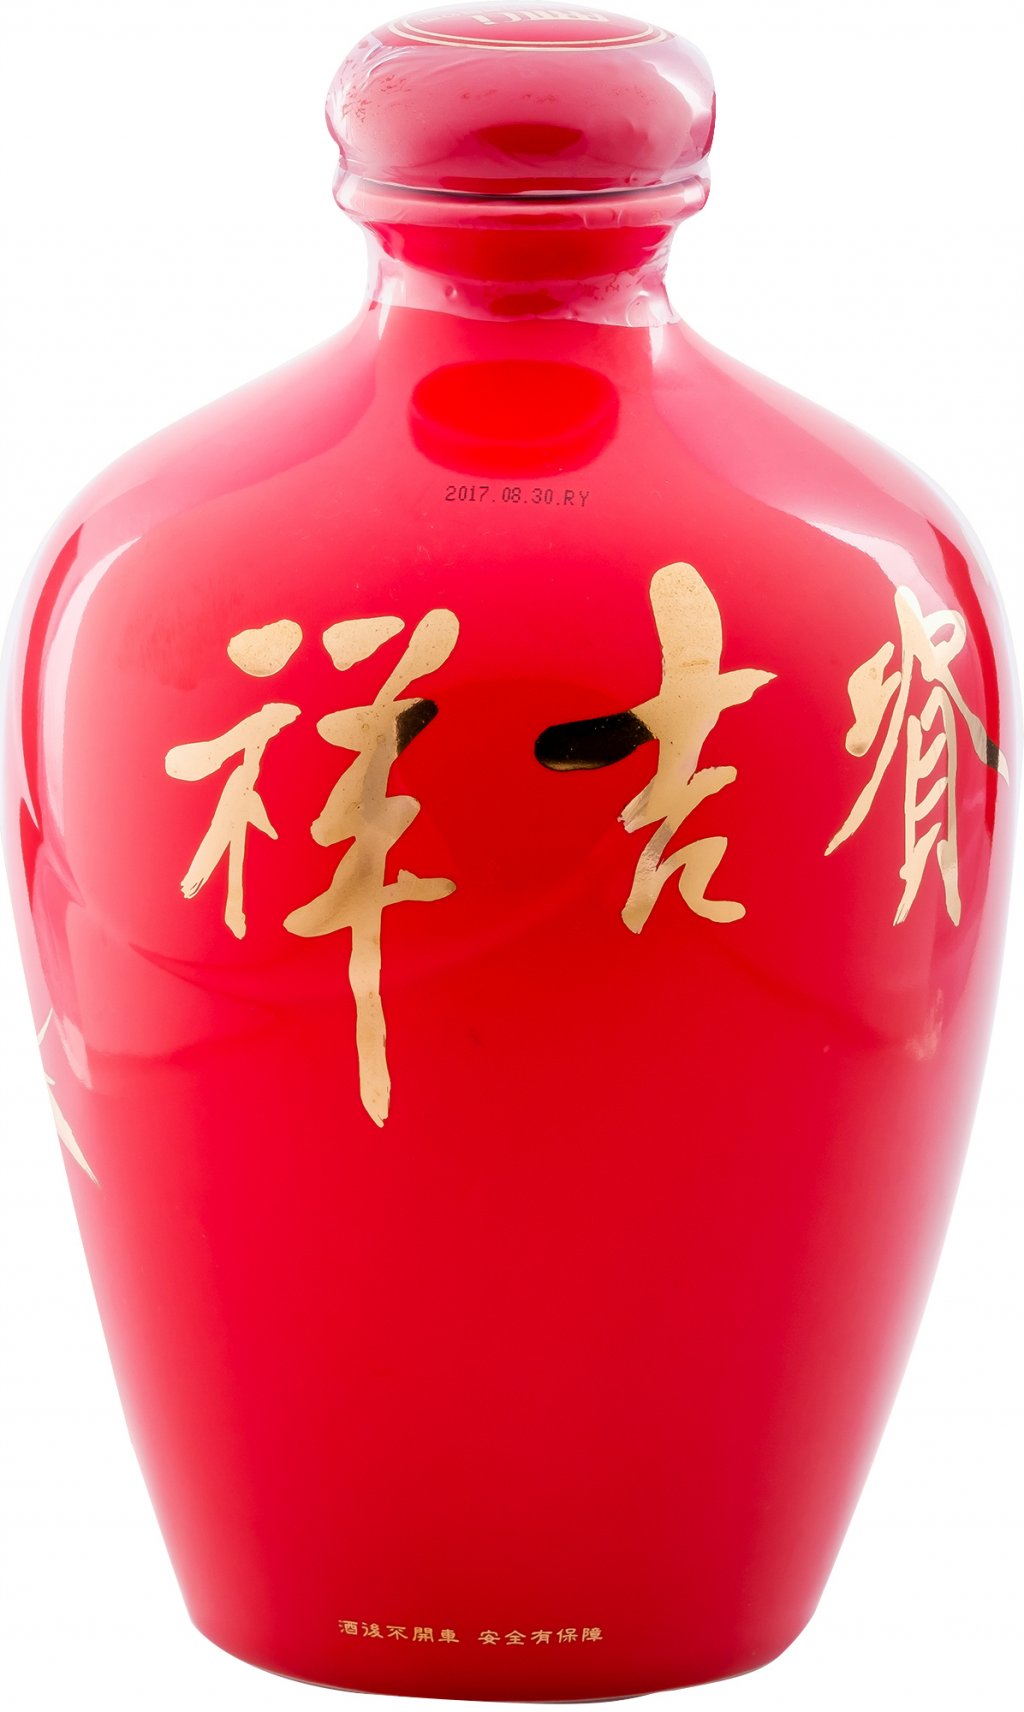 【台湘名家守正展】董加添 /<br>富貴吉祥(一) | 書畫瓷瓶高粱酒